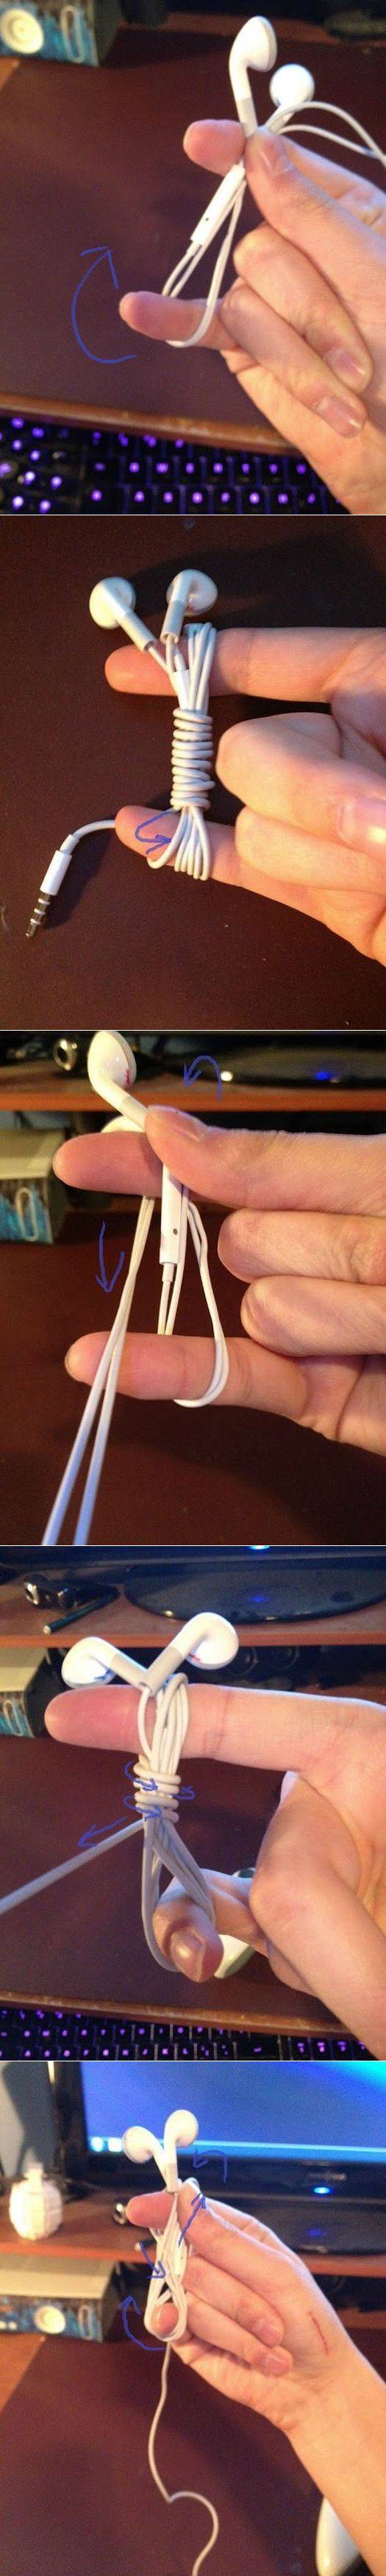 Как завязать наушники чтобы они не запутались. как сложить наушники?